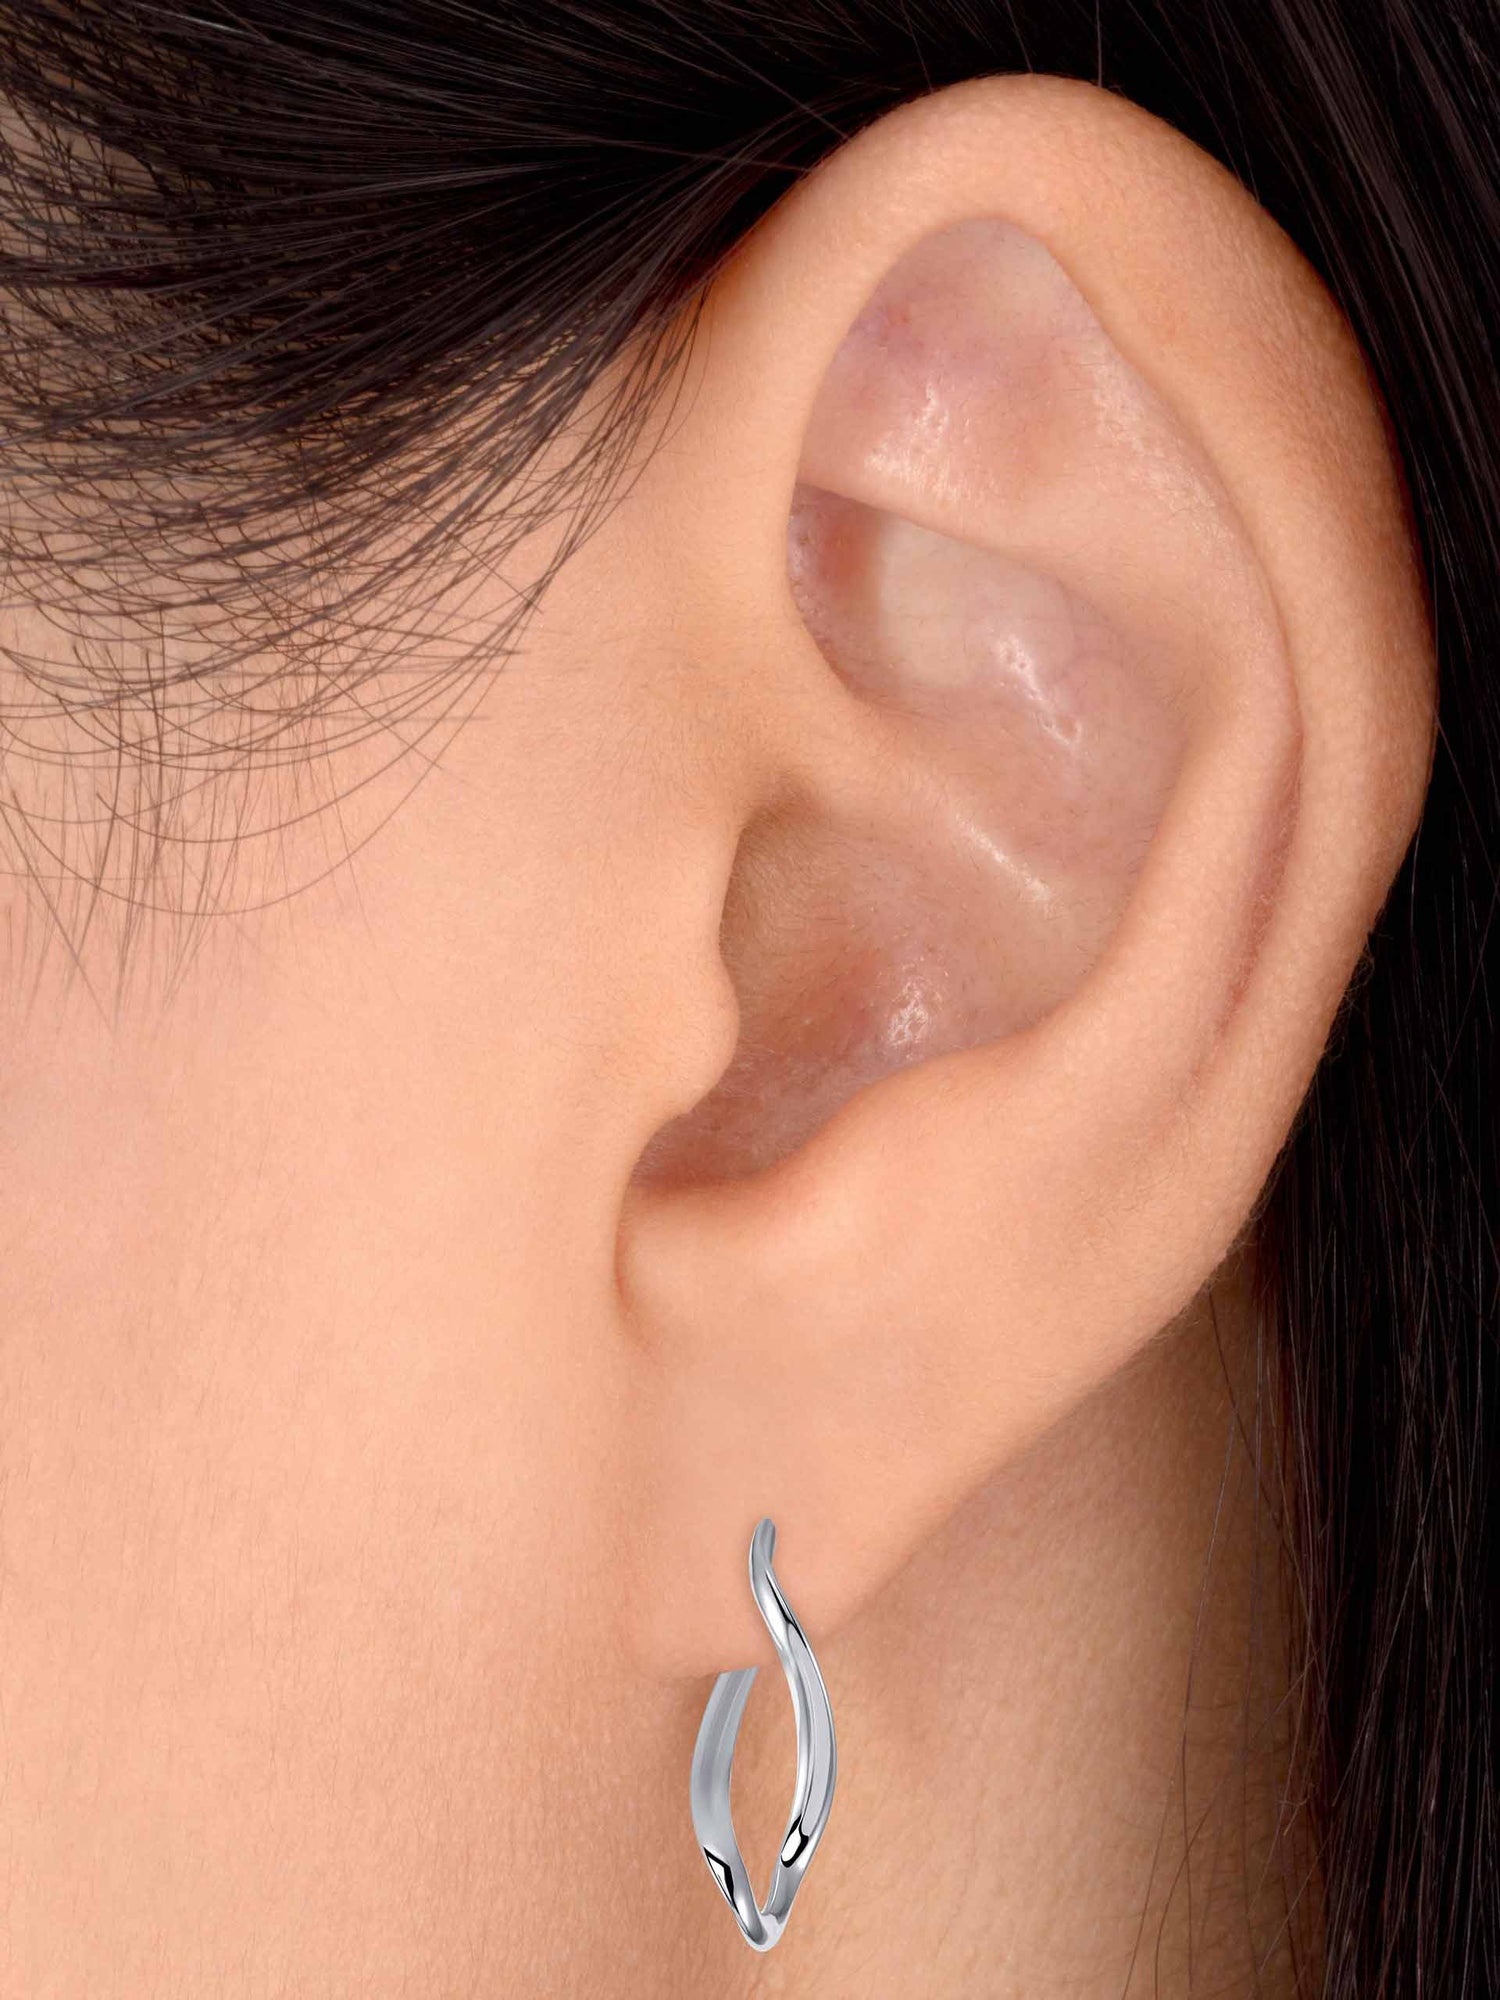 Sterling Silver Infinity Design Hoop Earrings